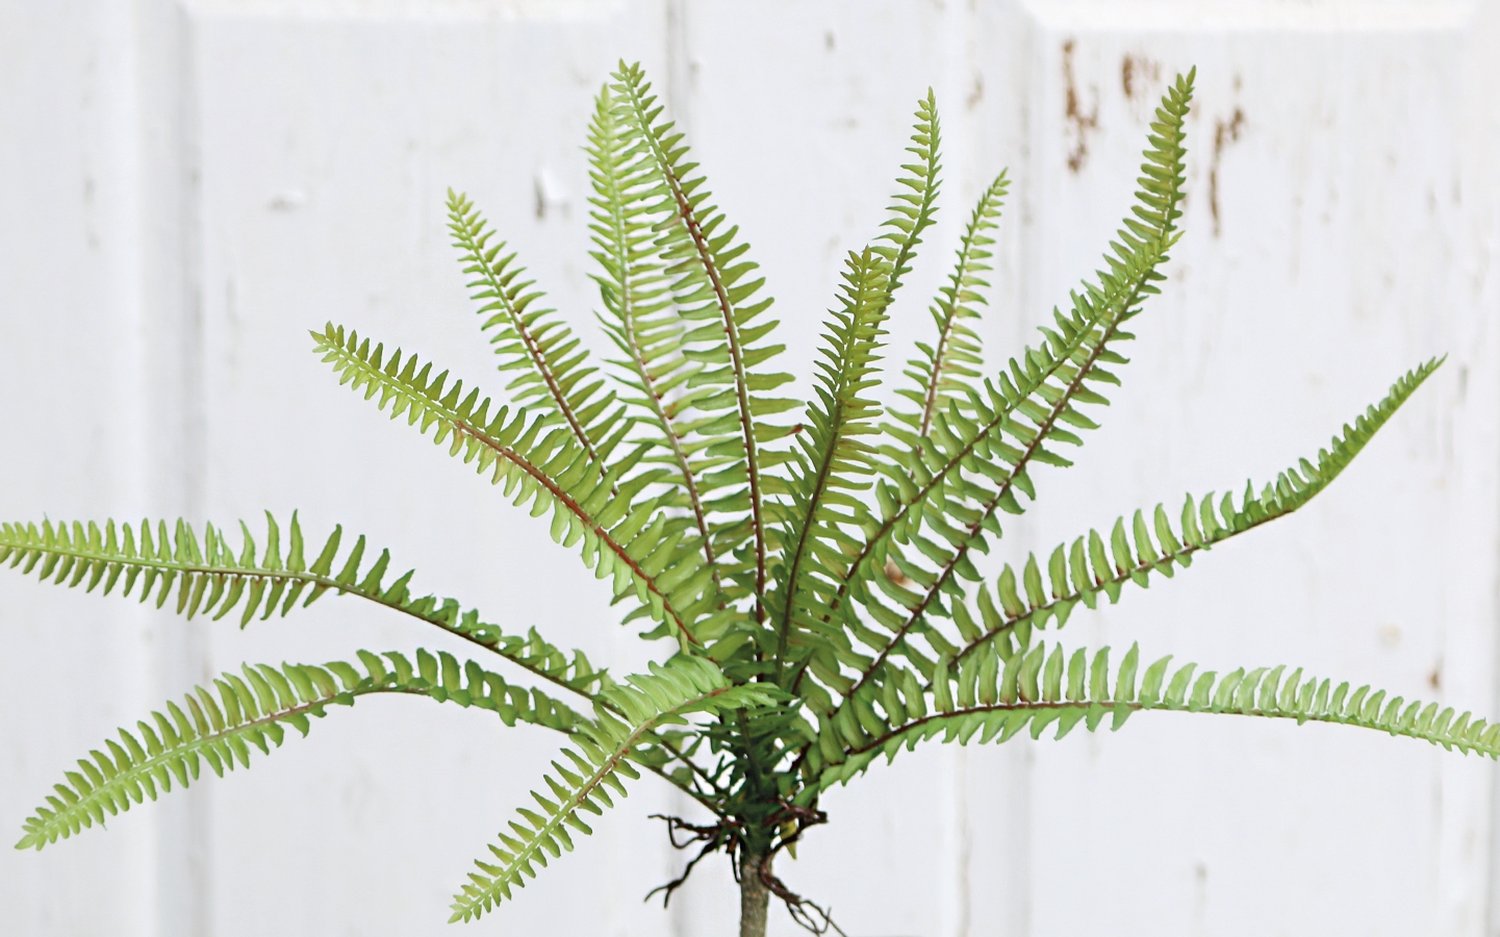 Imitation fern bush, 30 cm, green